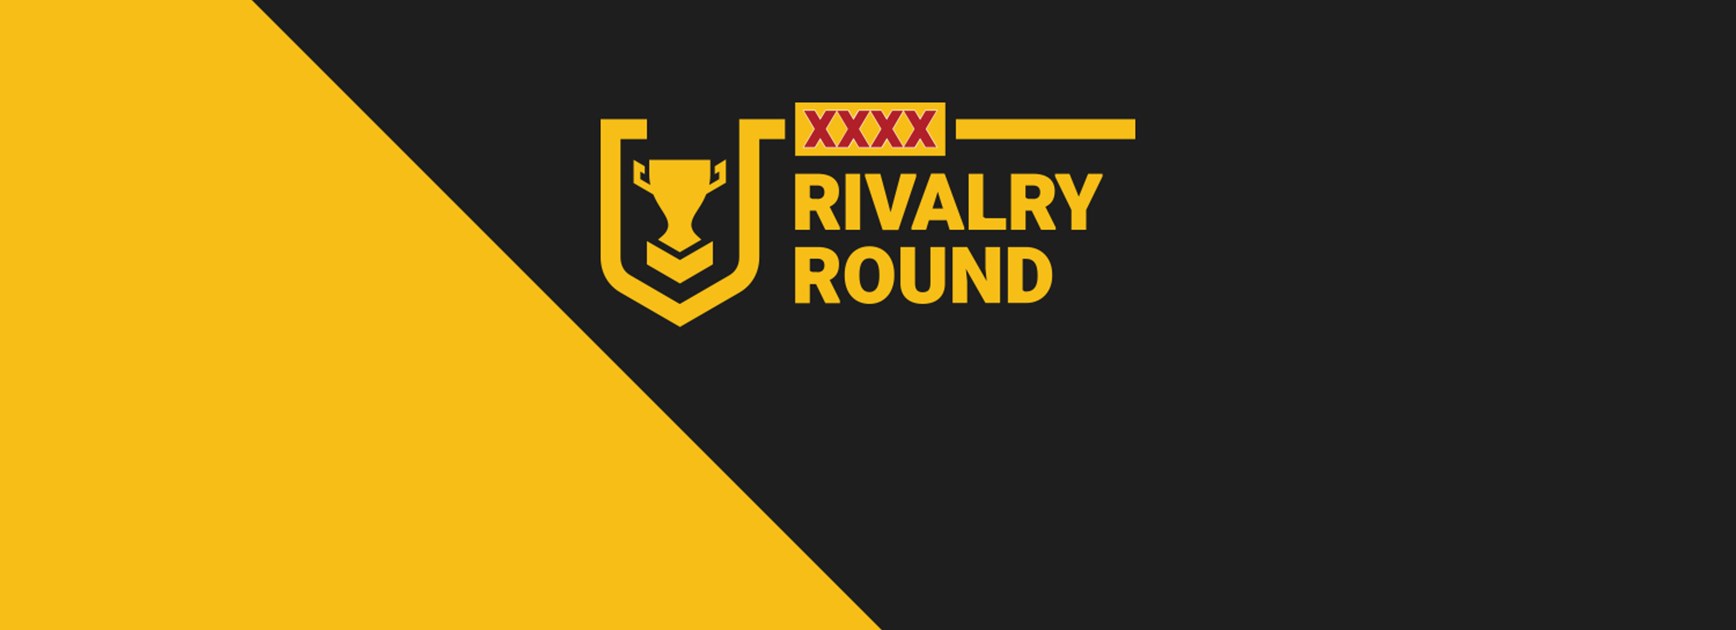 Round 4 XXXX Rivalry Round Hostplus Cup team lists